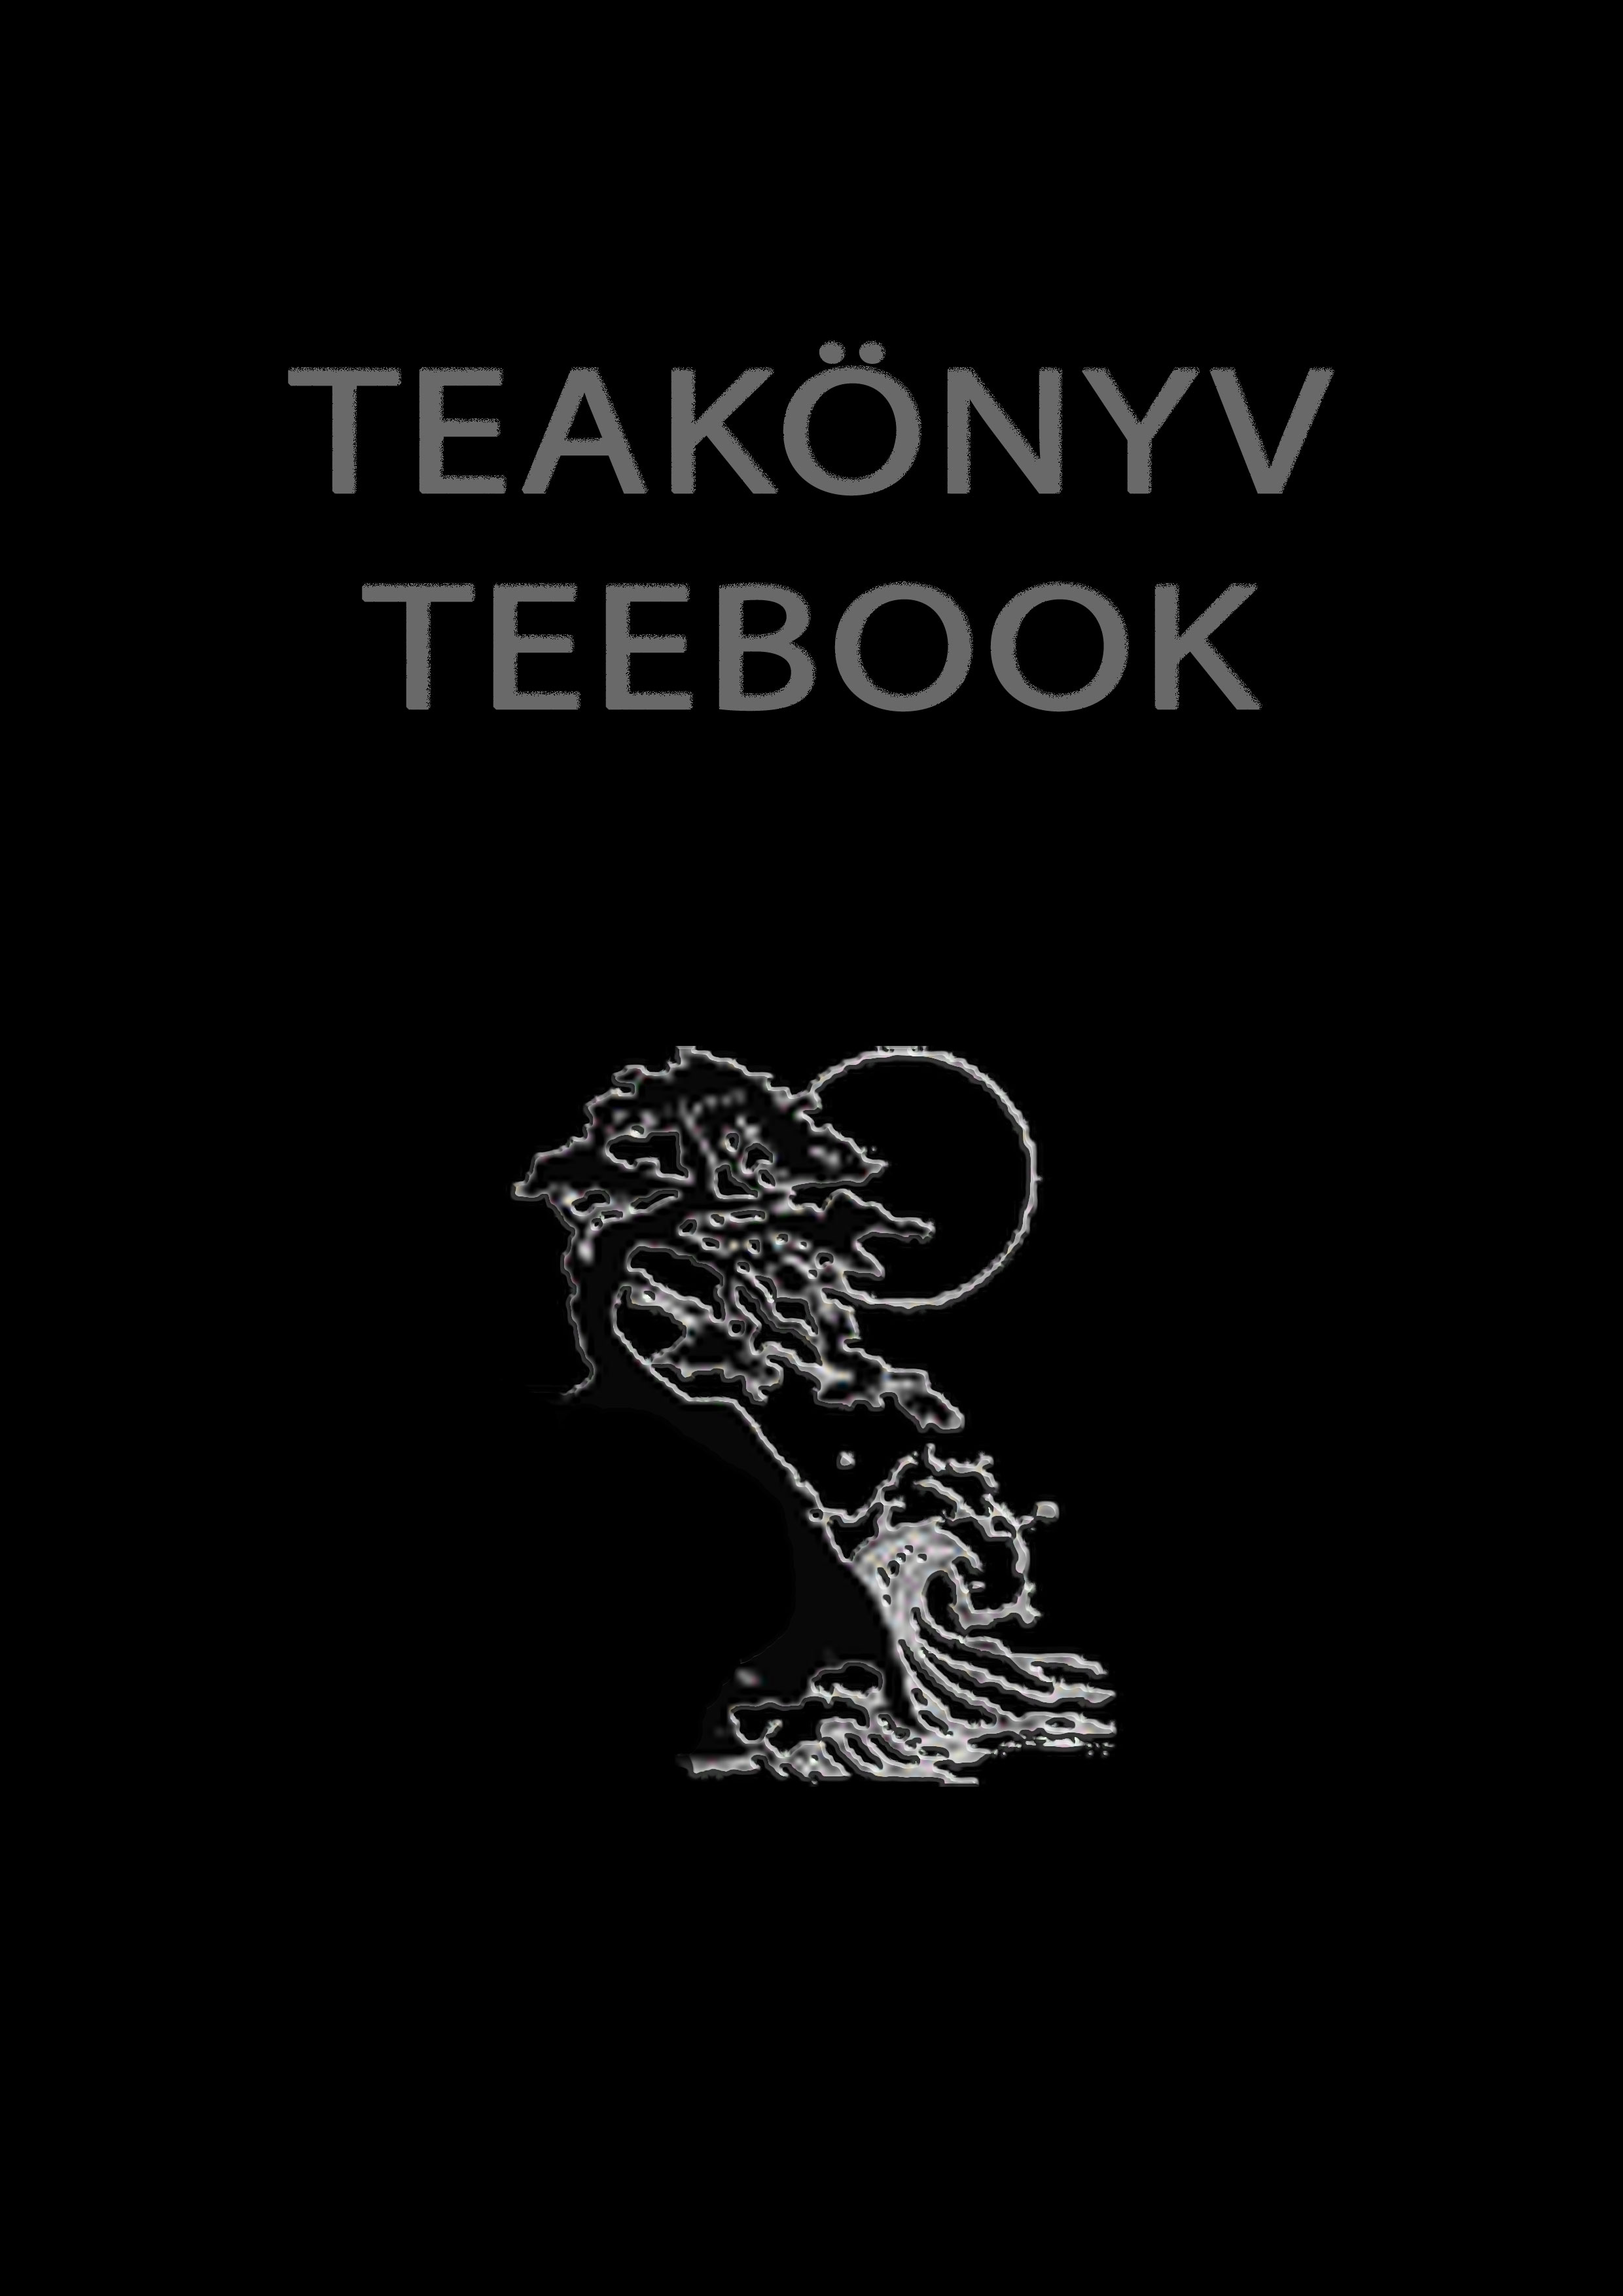 Teakönyv - Teebook : Rhonoghulita breviarium